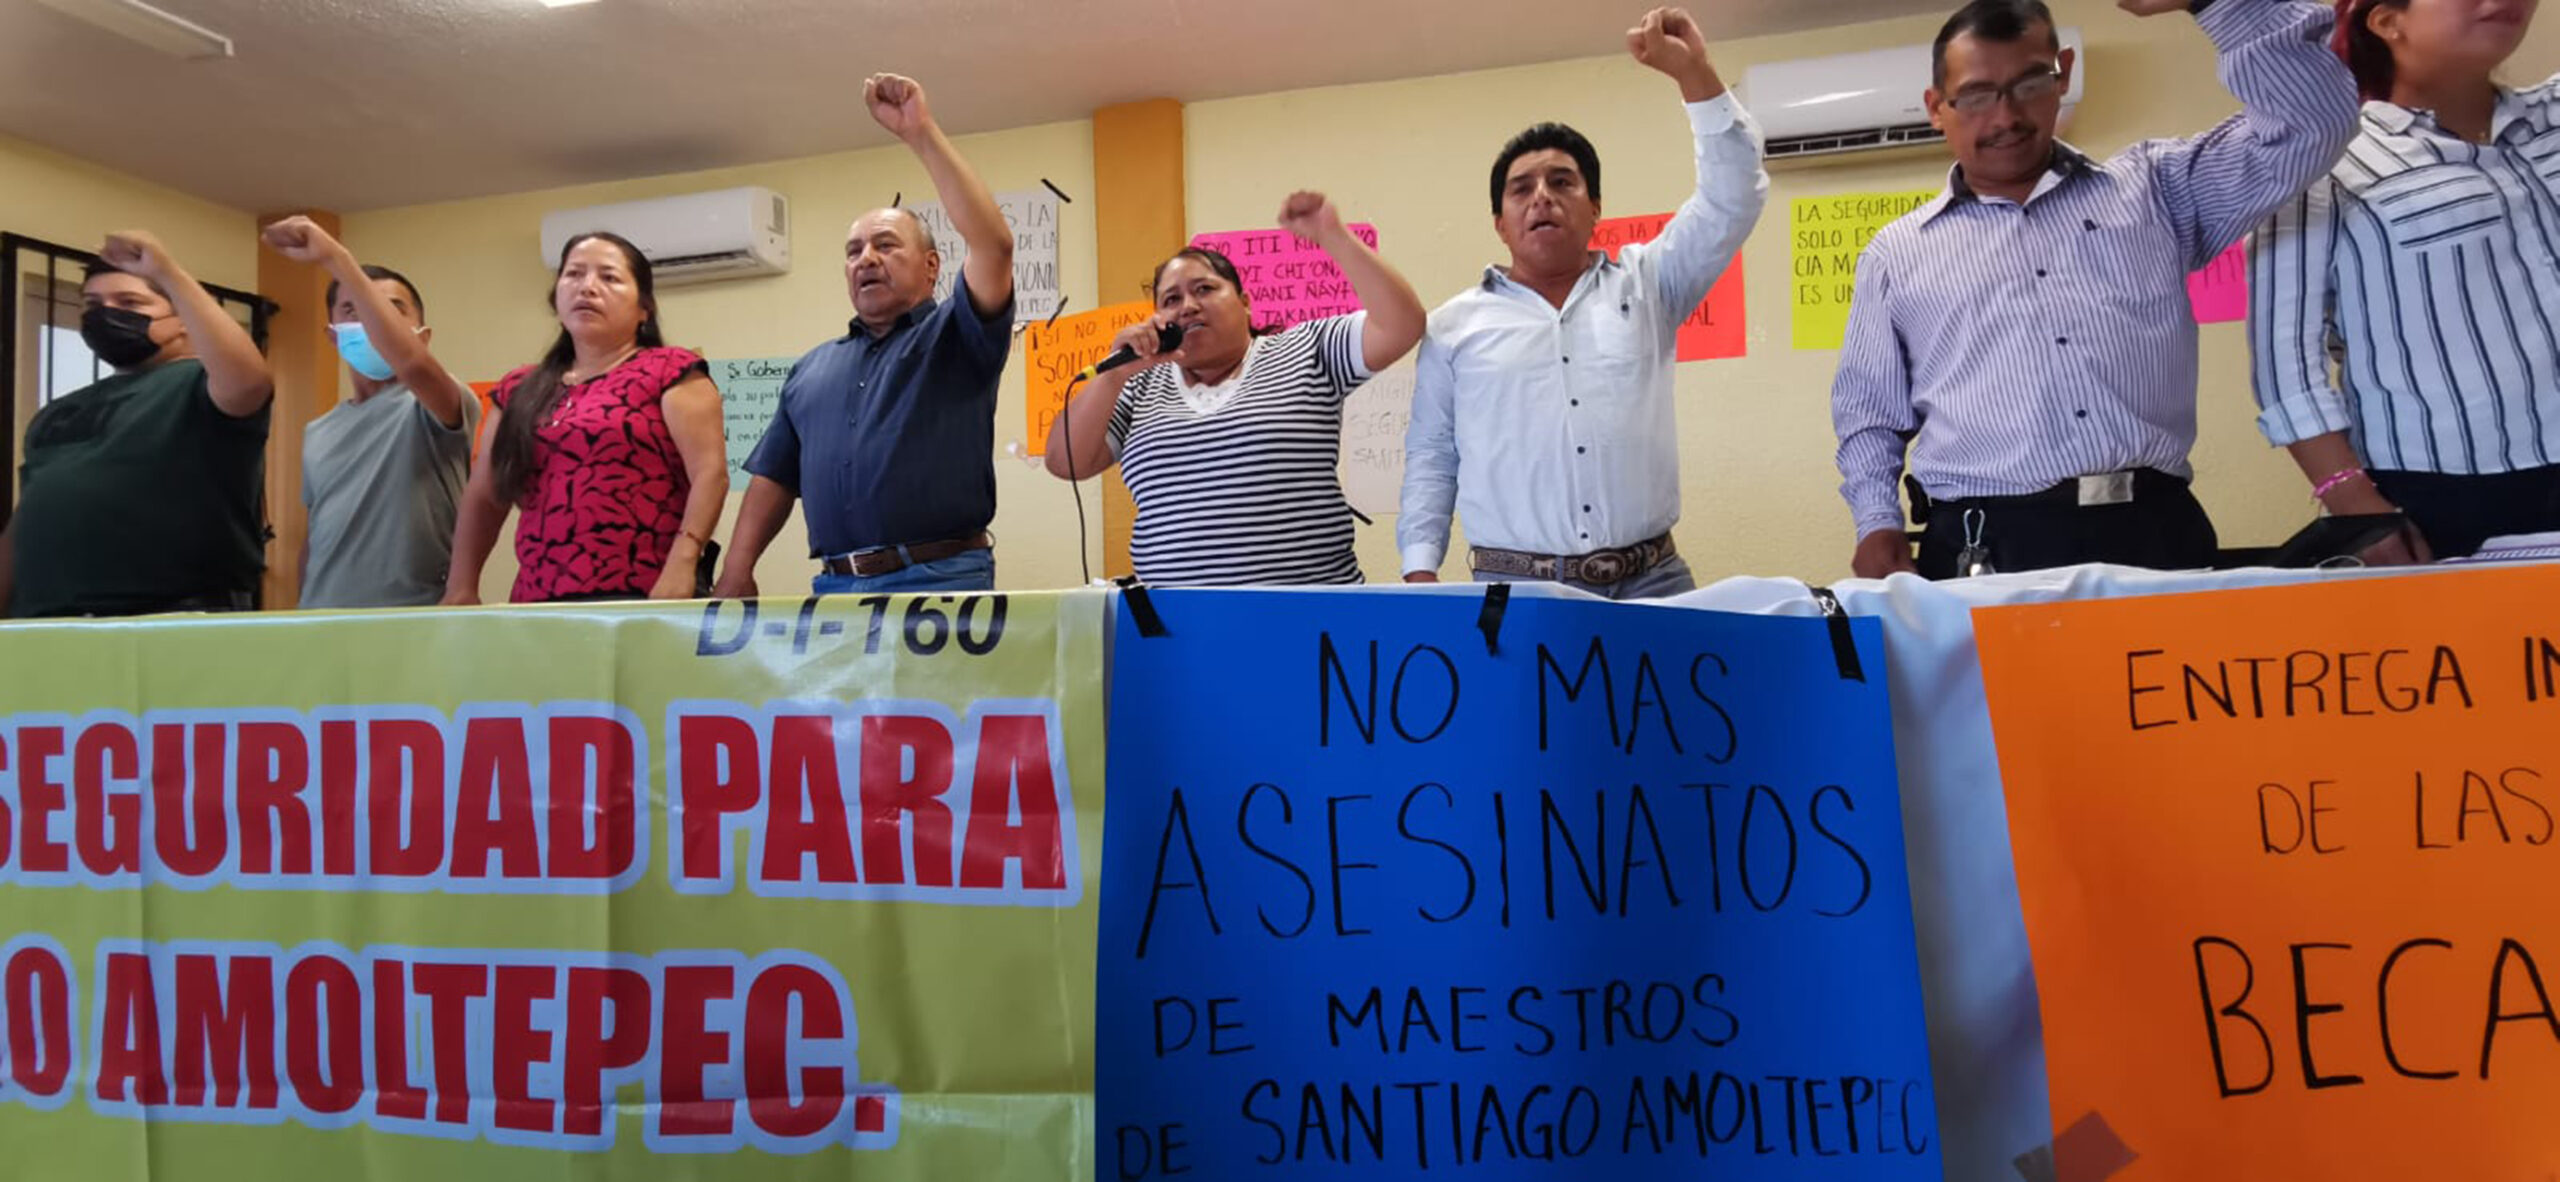 Por inseguridad, magisterio rechaza acudir a Amoltepec | El Imparcial de Oaxaca